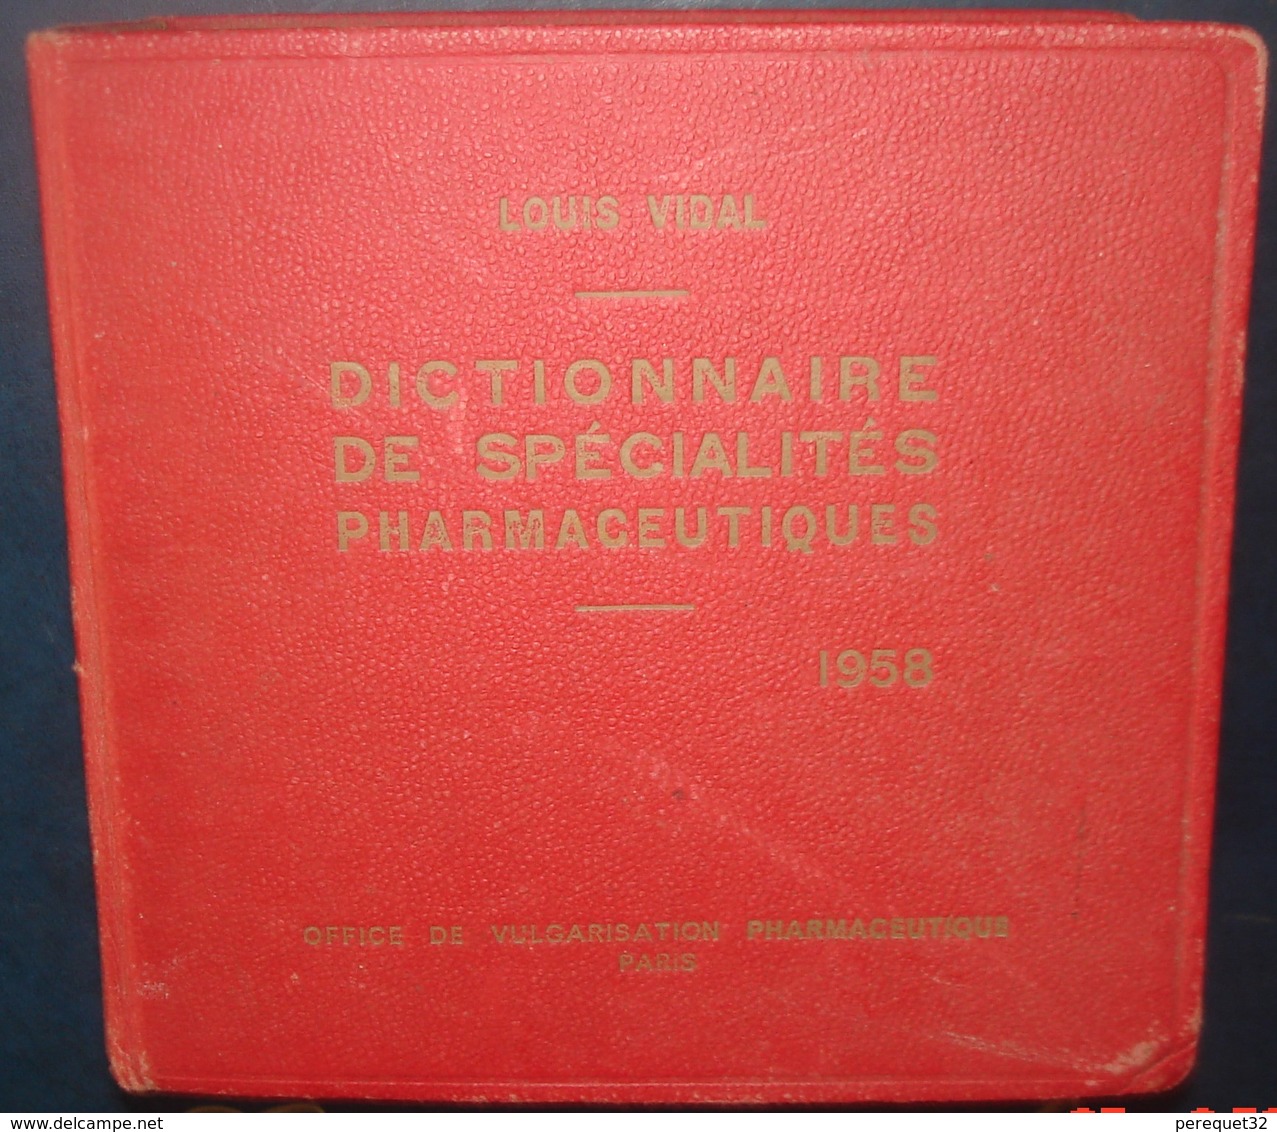 Dictionnaire De Spécialités Pharmaceutiques.Louis VIDAL.1958.3506 Pages +96 - Dictionaries